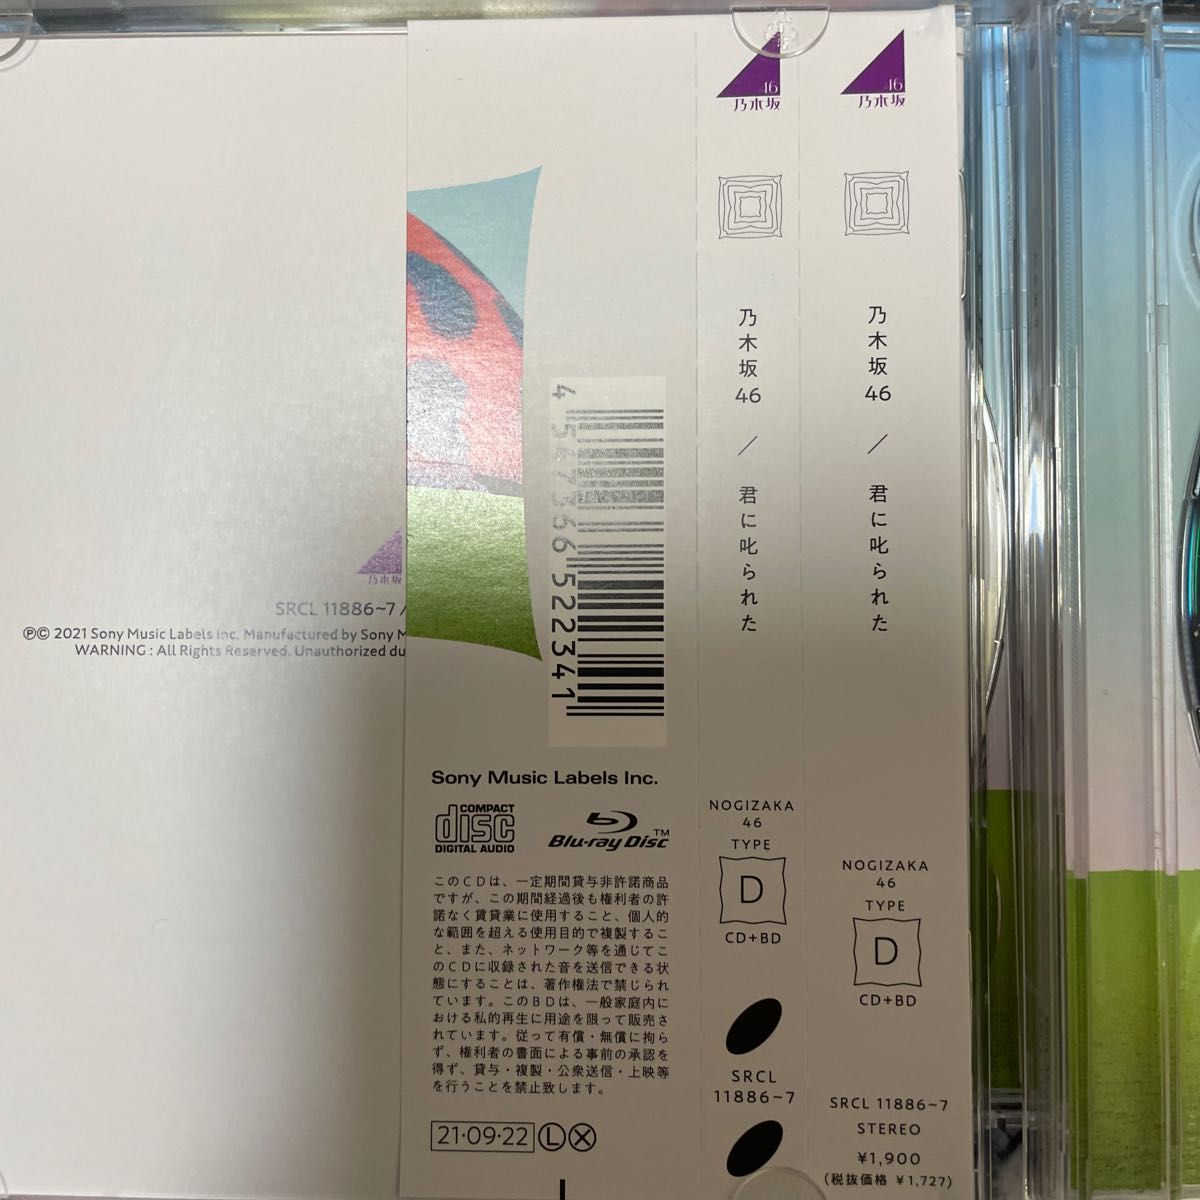 乃木坂46 CD+Blu-ray/タイトル未定 21/9/22発売